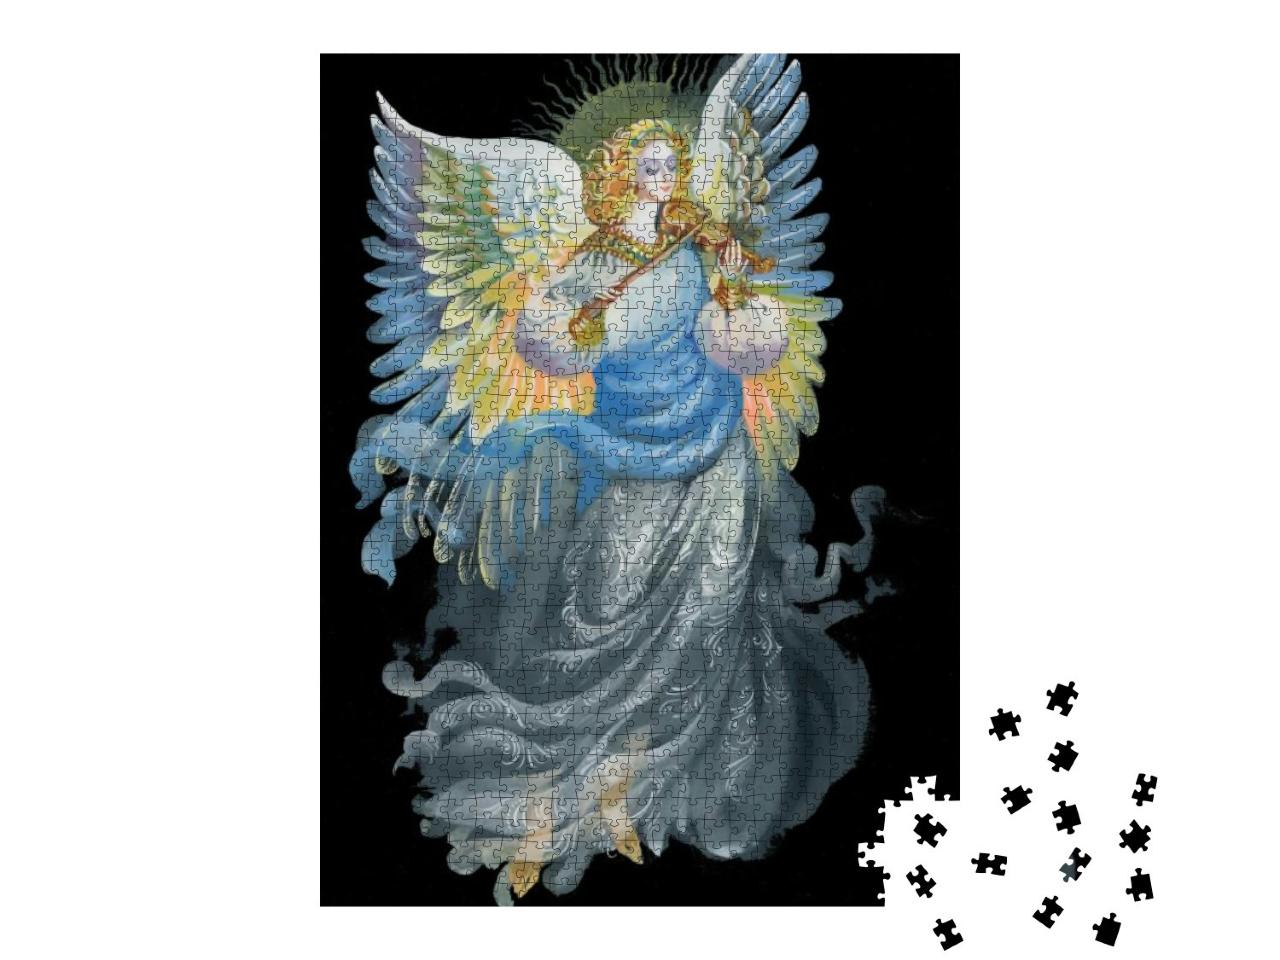 Puzzle 1000 Teile „Gemäldesammlung: Engel“